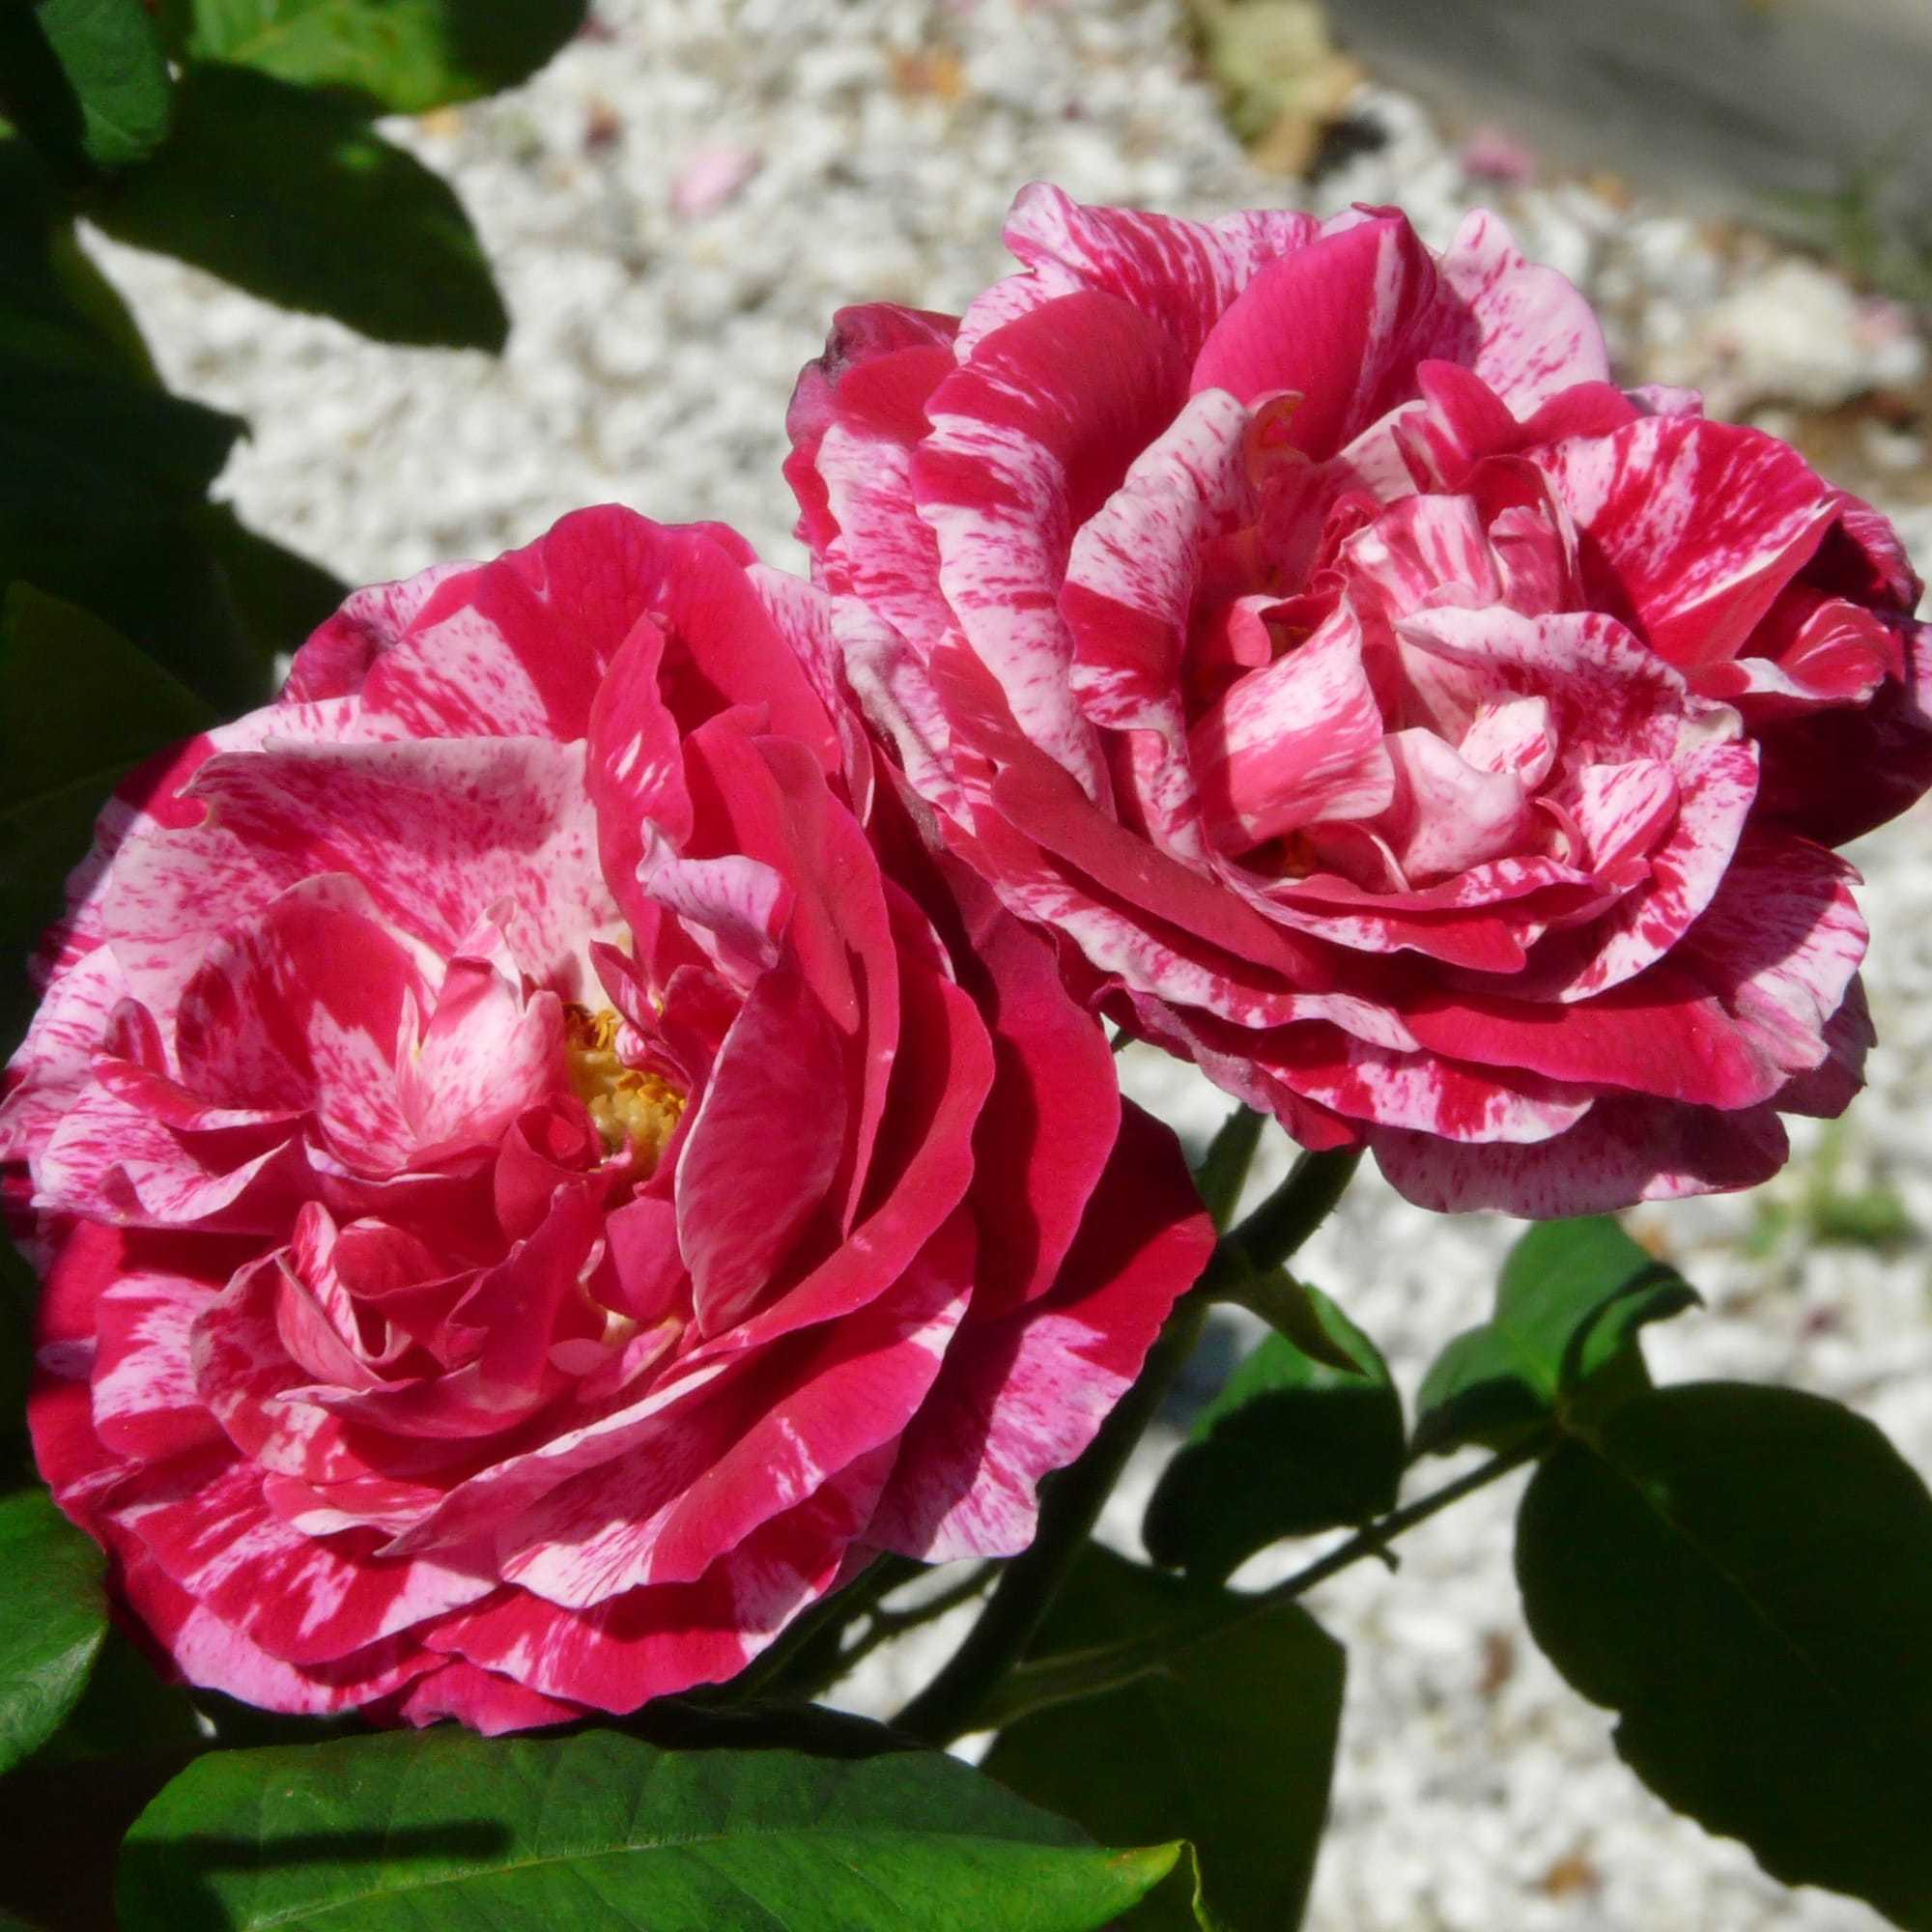 О сортах парковых роз: описание и характеристики, посадка, уход, выращивание